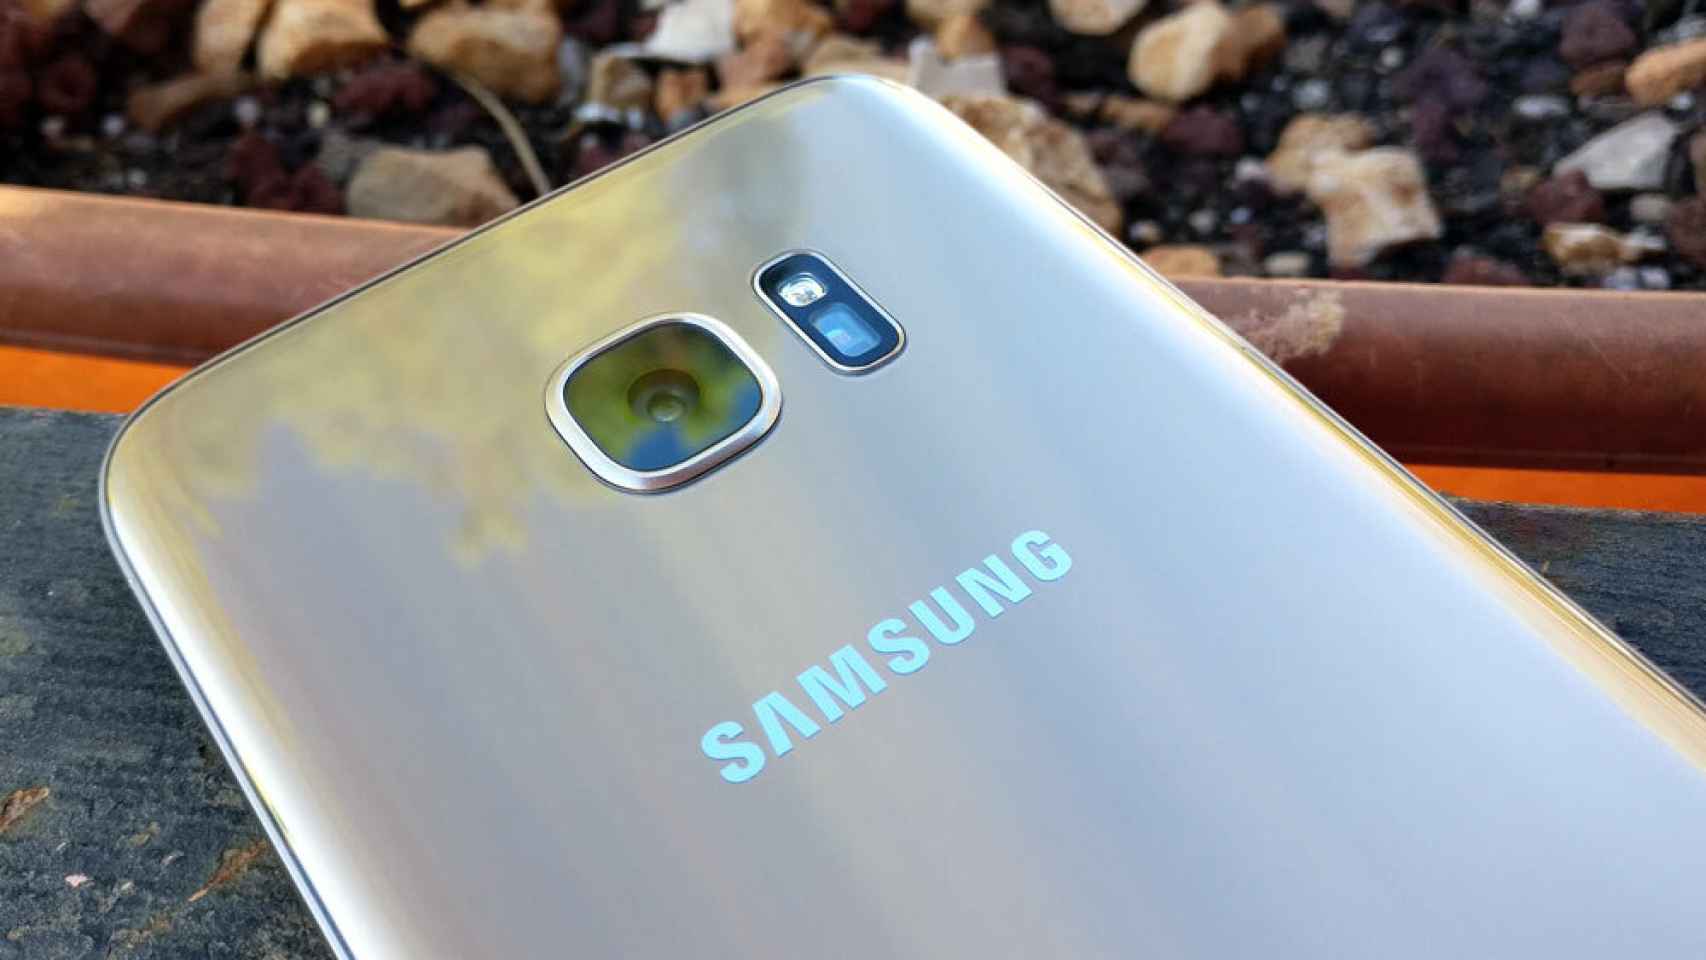 Samsung planea la venta de móviles reacondicionados. ¿Comprarías uno?